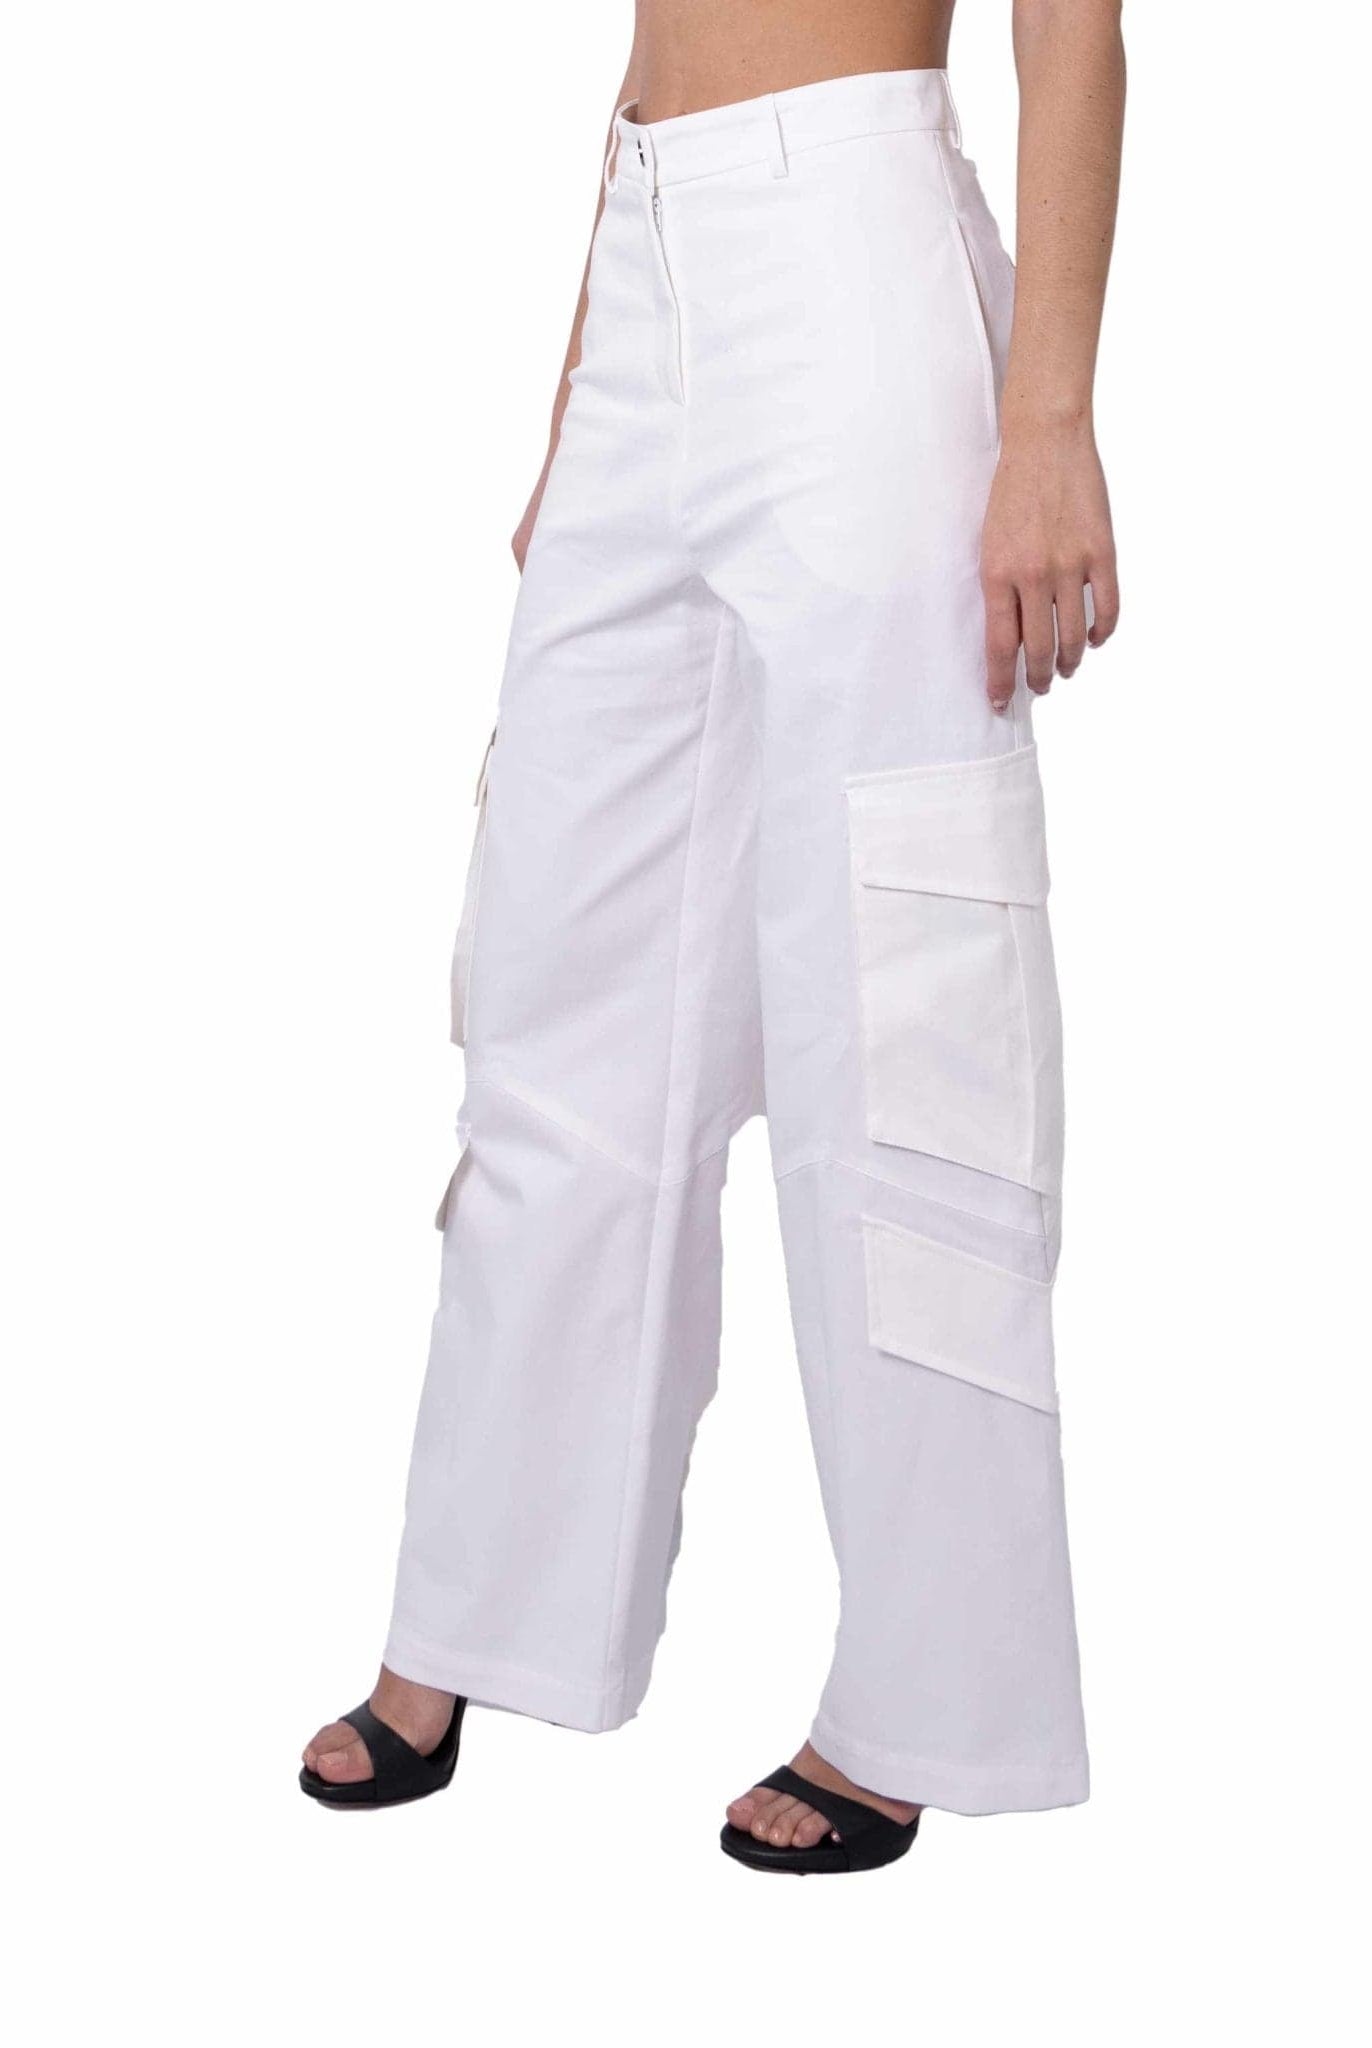 Pantalone cargo in cotone bianco- Alice Miller -Giorgioquinto